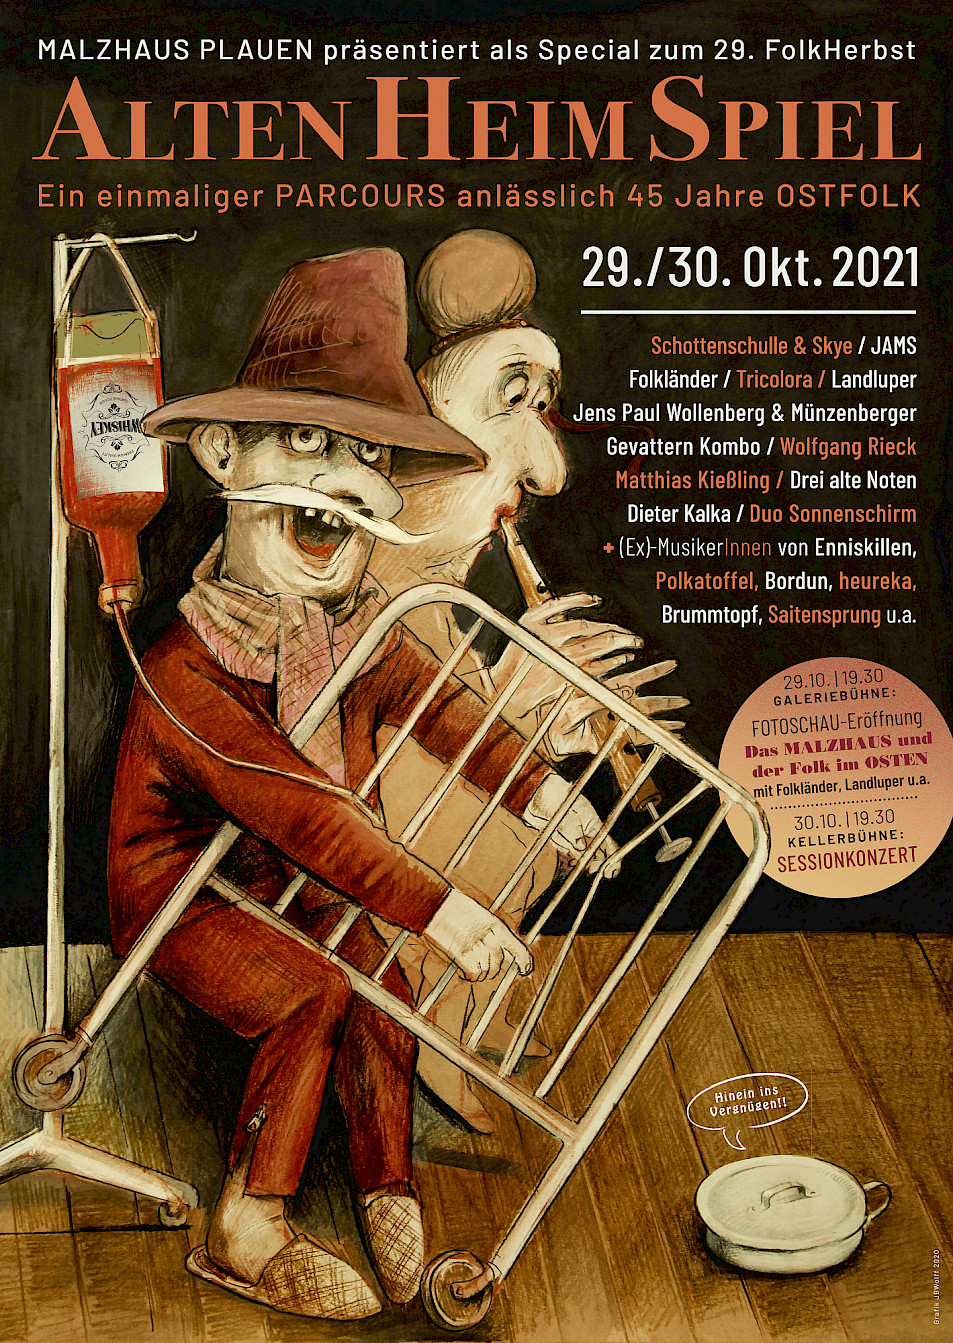 AltenHeimSpiel - Plakat von Jürgen B. Wolff